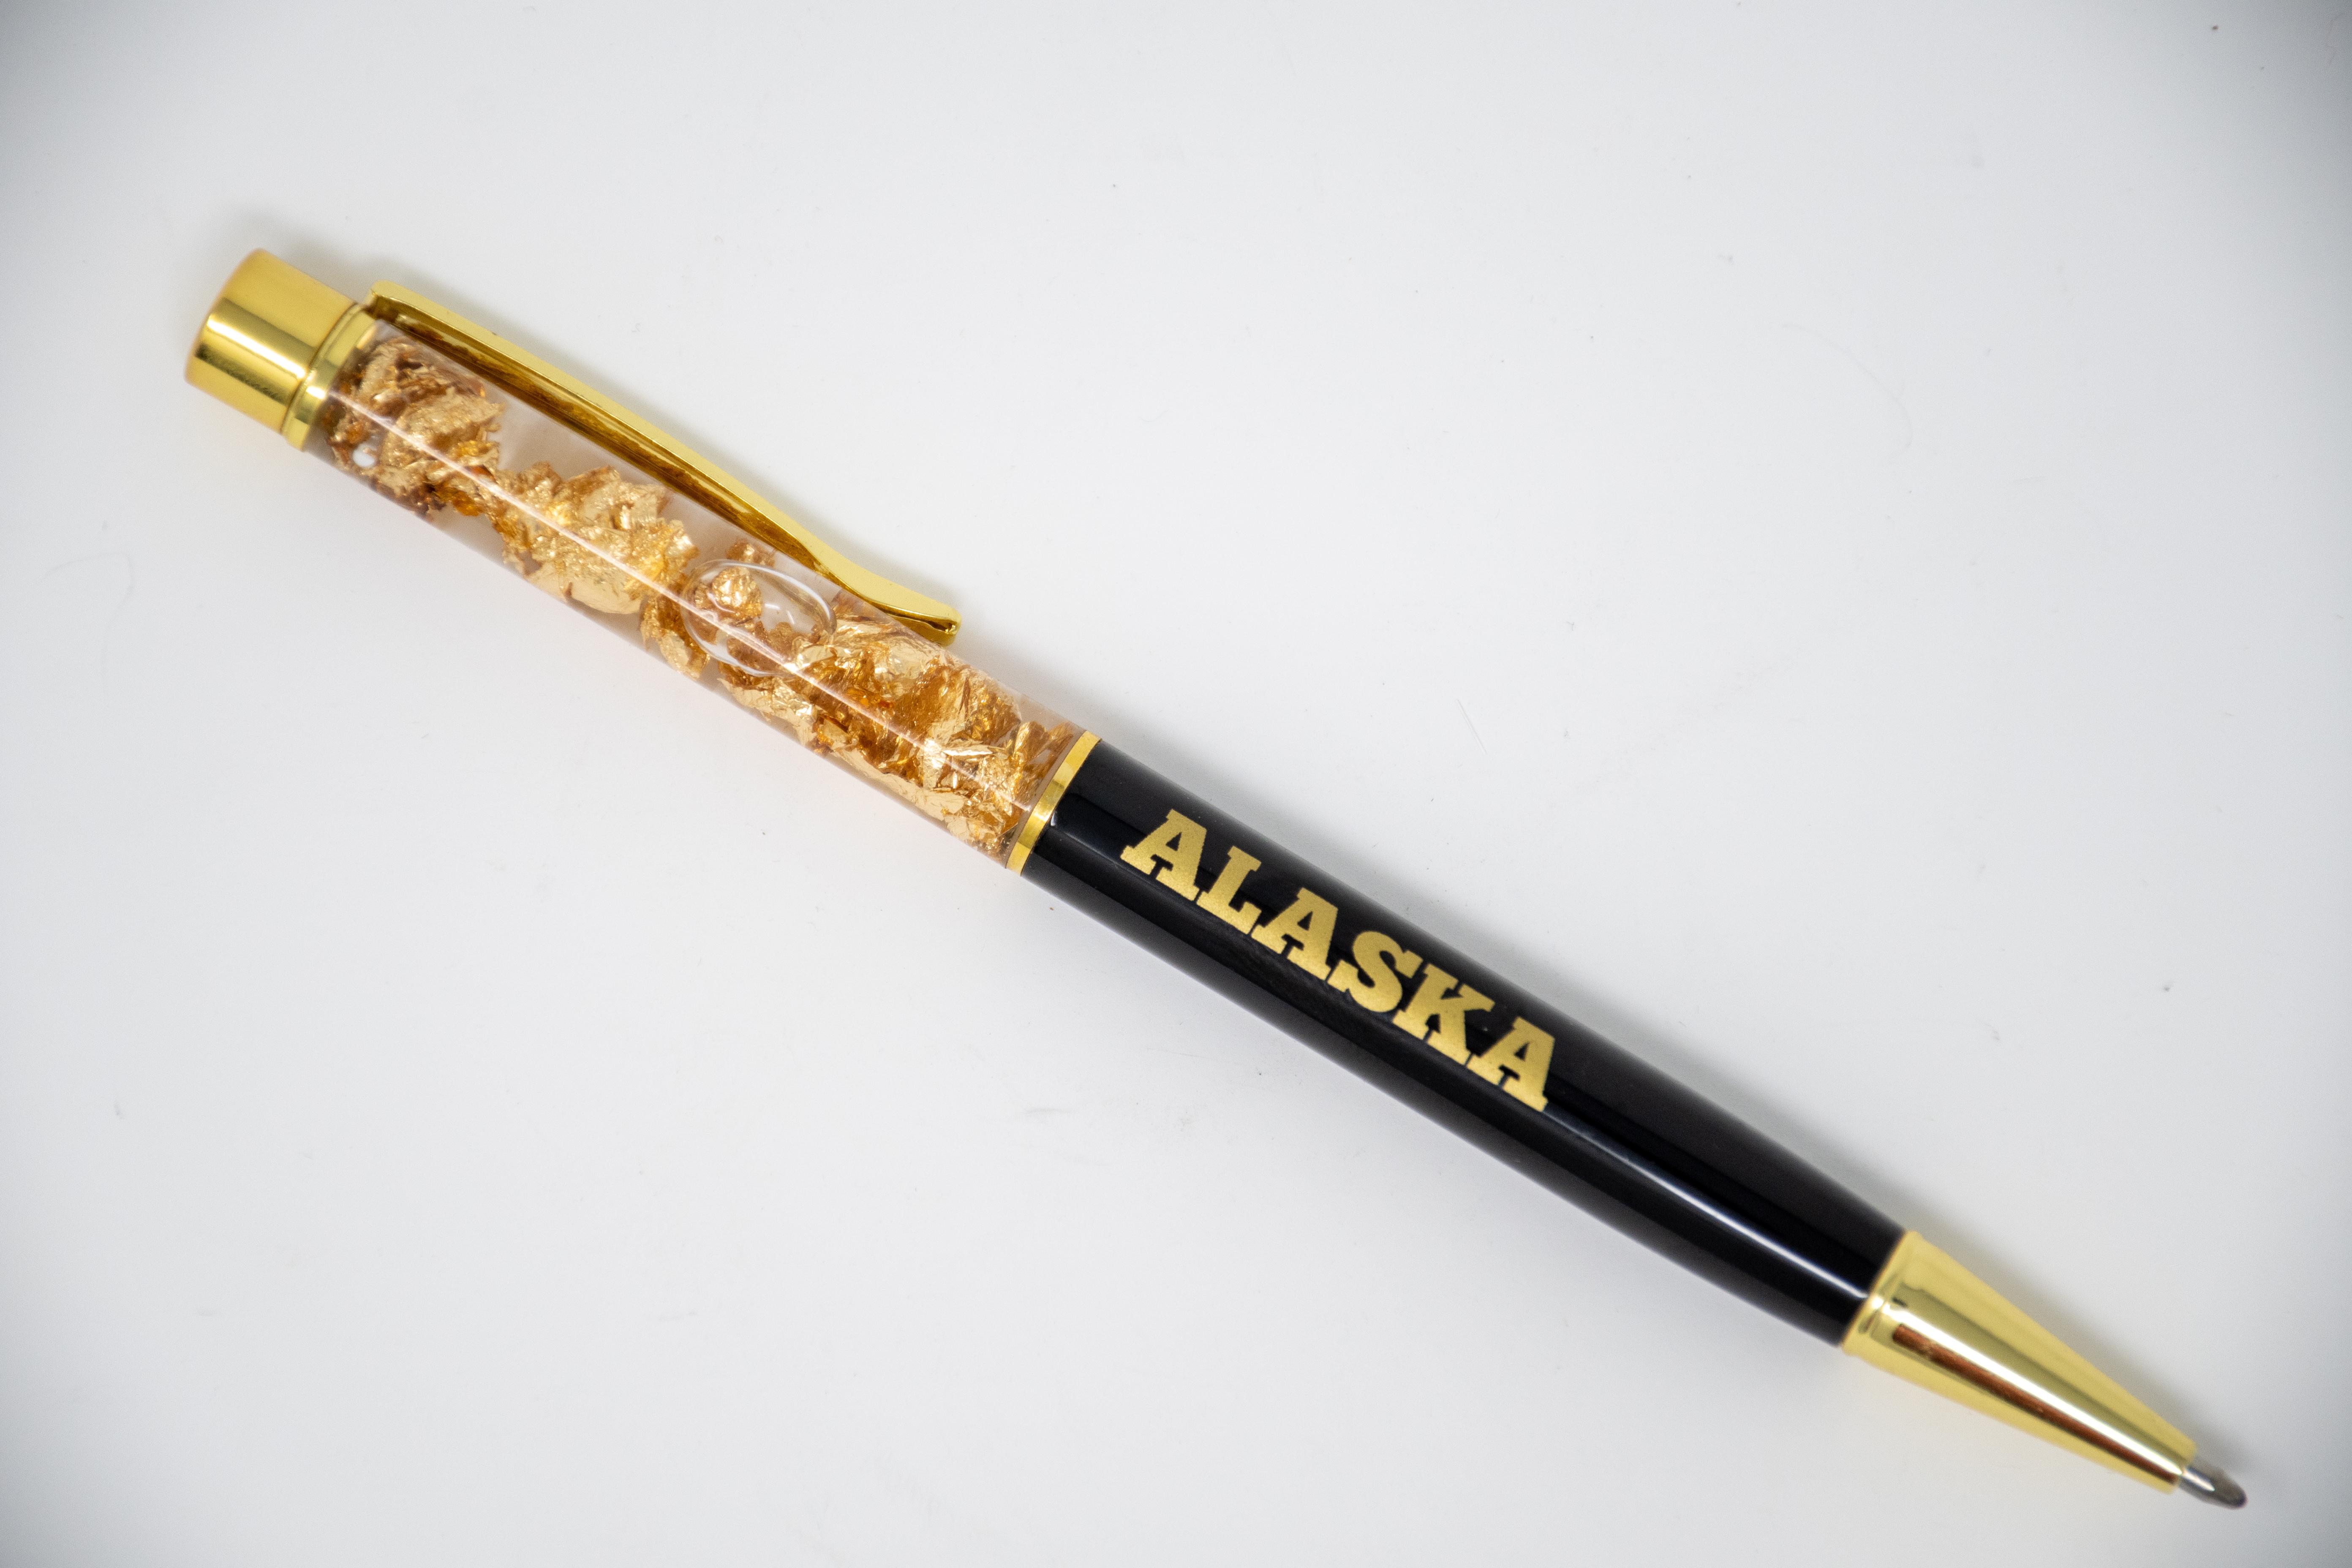  Gold Flake Pen